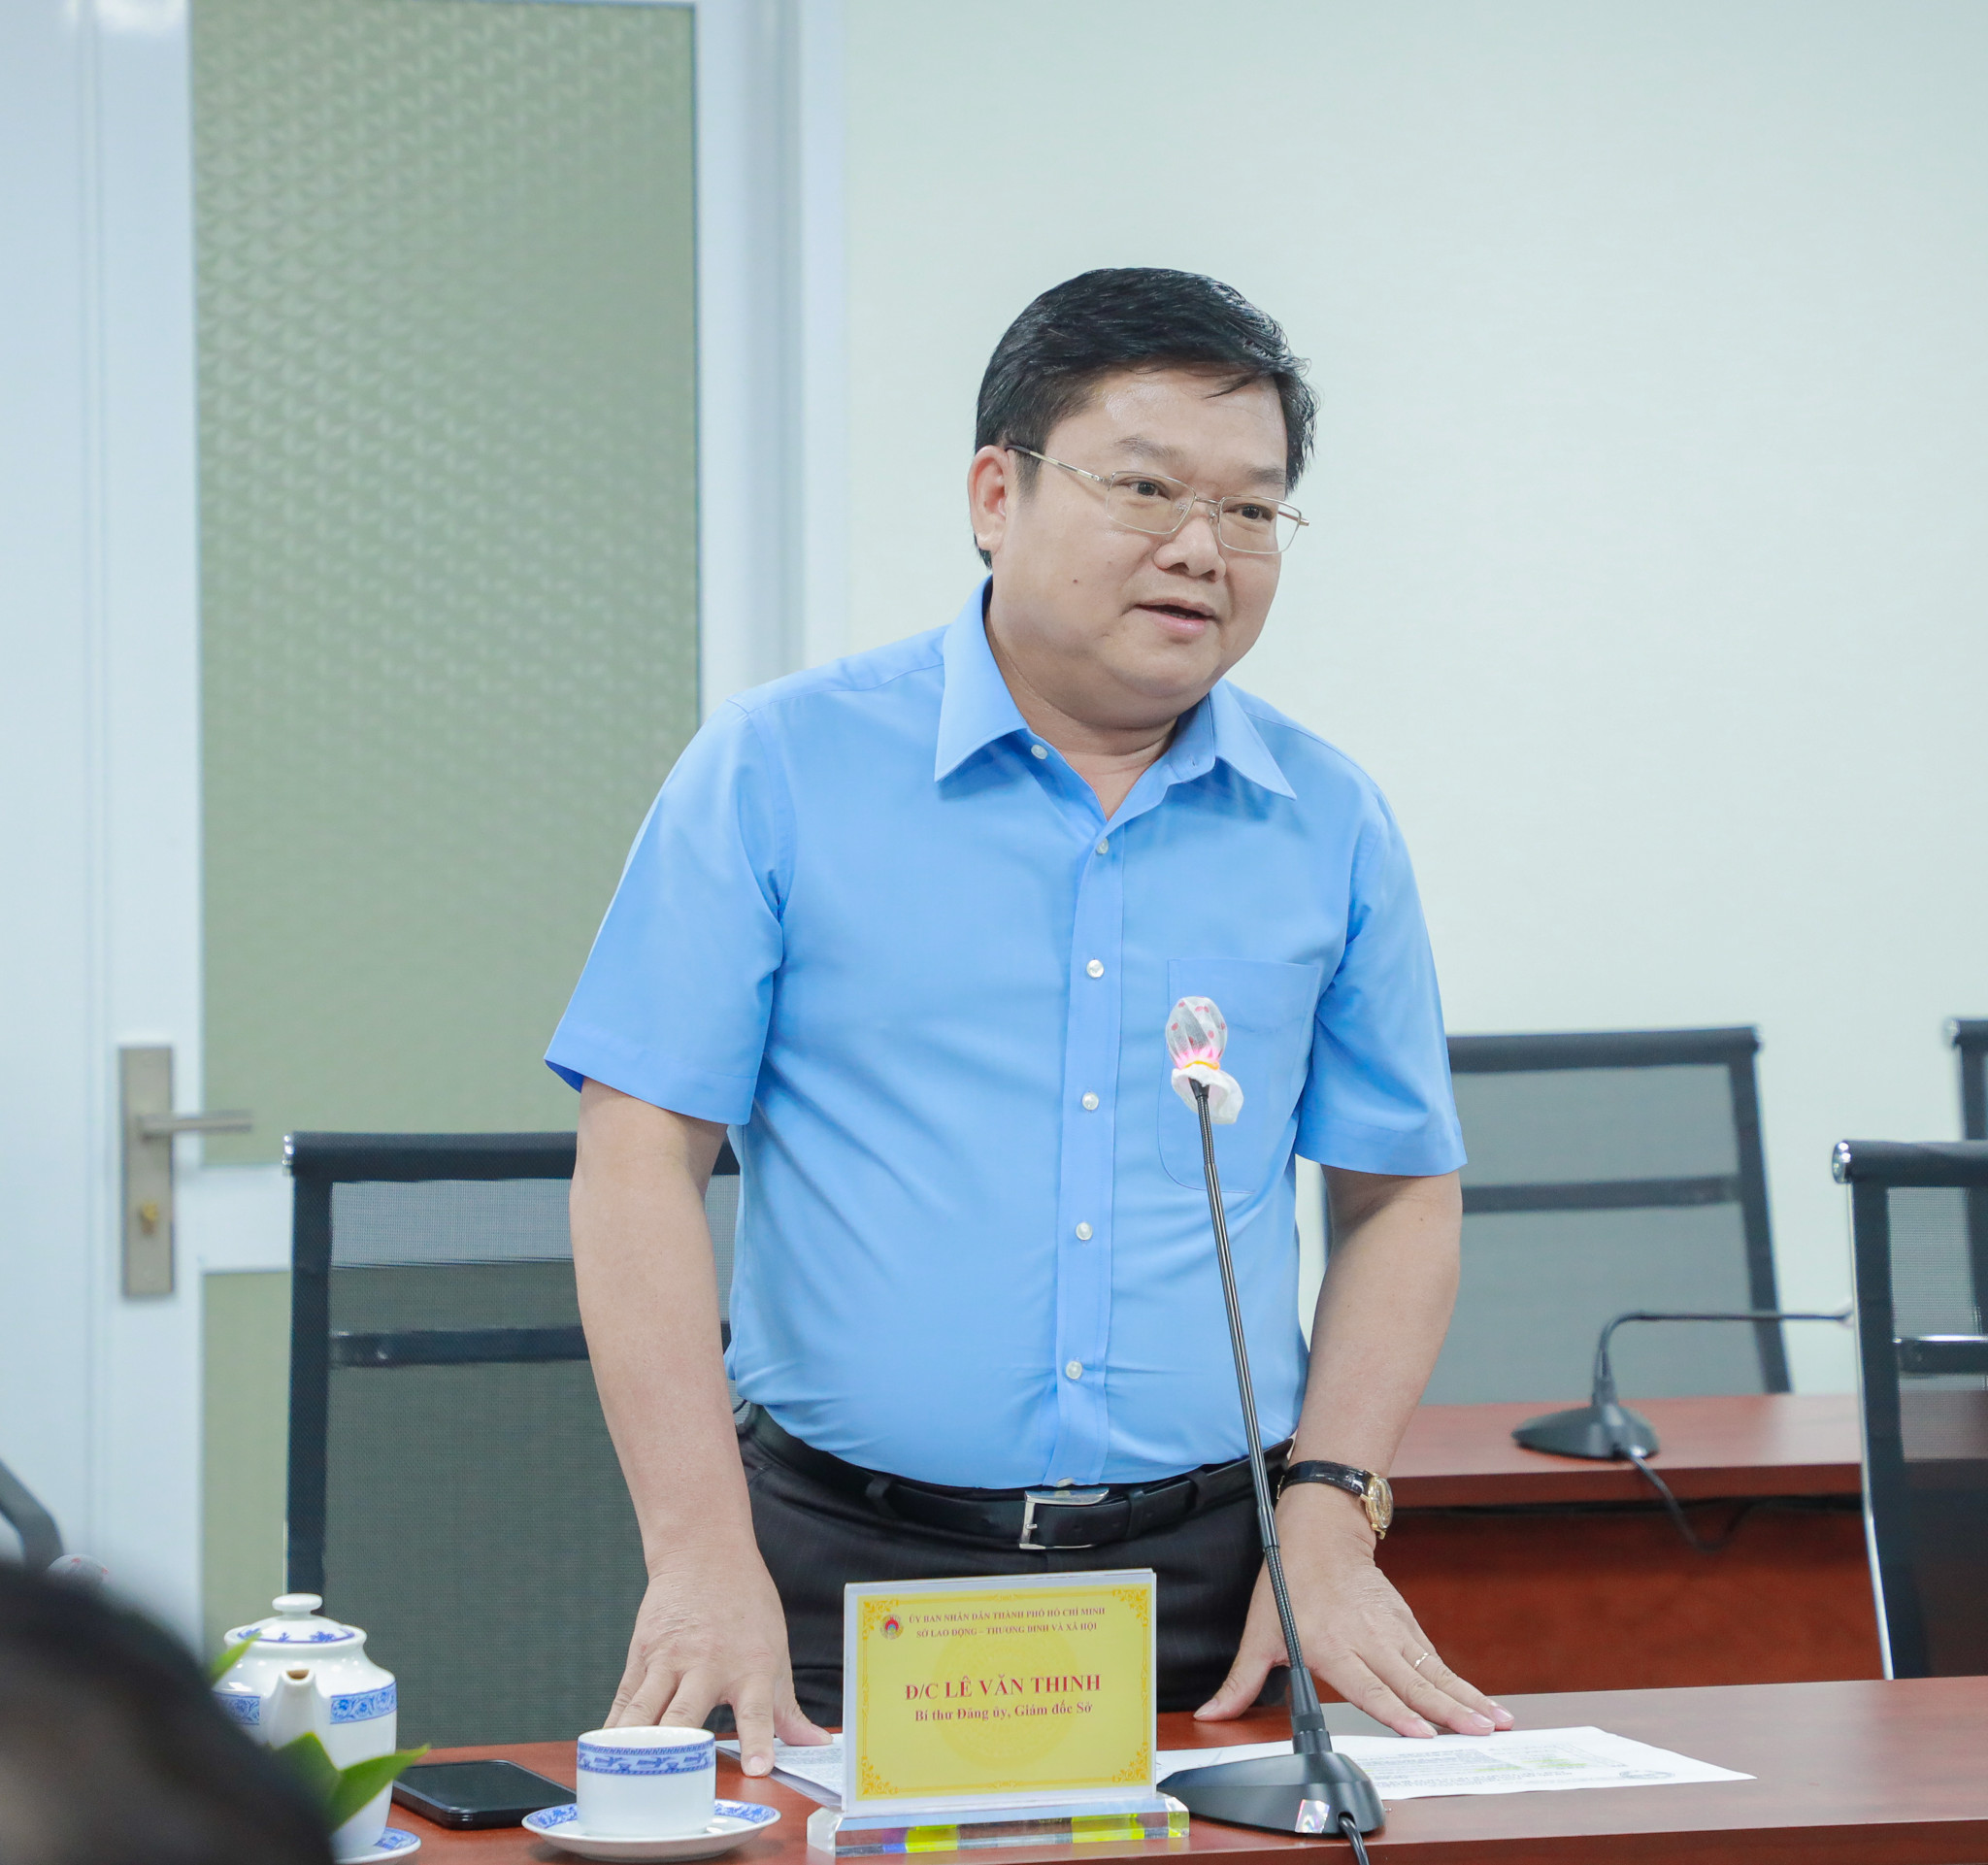 Ông Lê Văn Thinh, Giám đốc Sở Lao động - Thương binh và Xã hội Thành phố Hồ Chí Minh tại buổi làm việc.